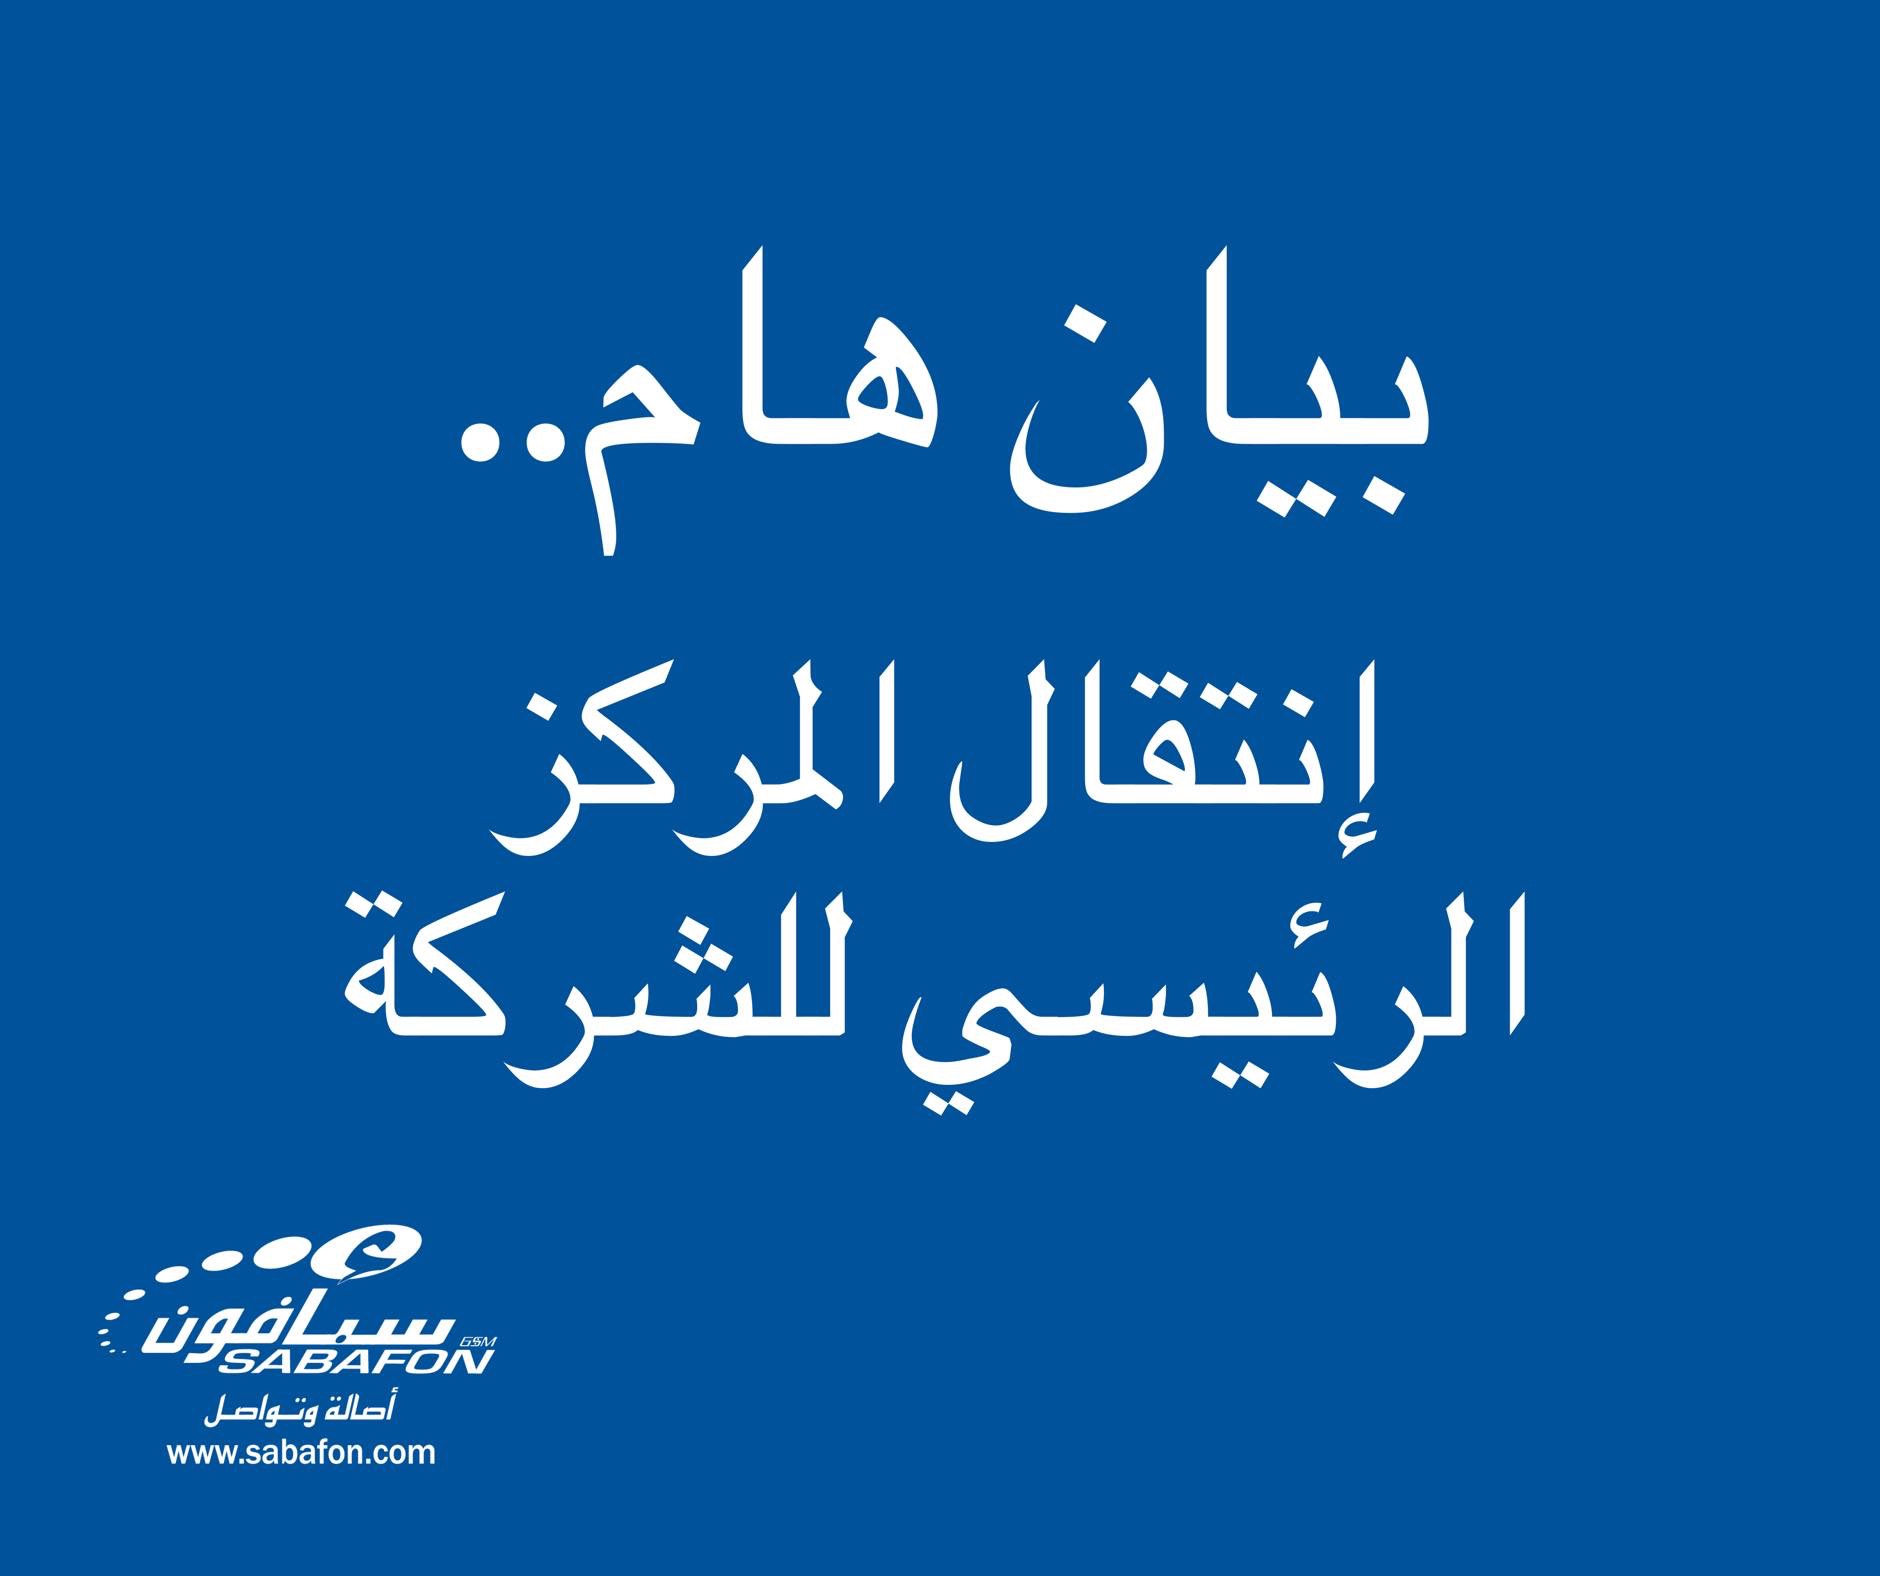 شركة سبأفون تعلن نقل مقرها من صنعاء بعد اقتحام الحوثيين لمقرها الرئيسي والتزوير